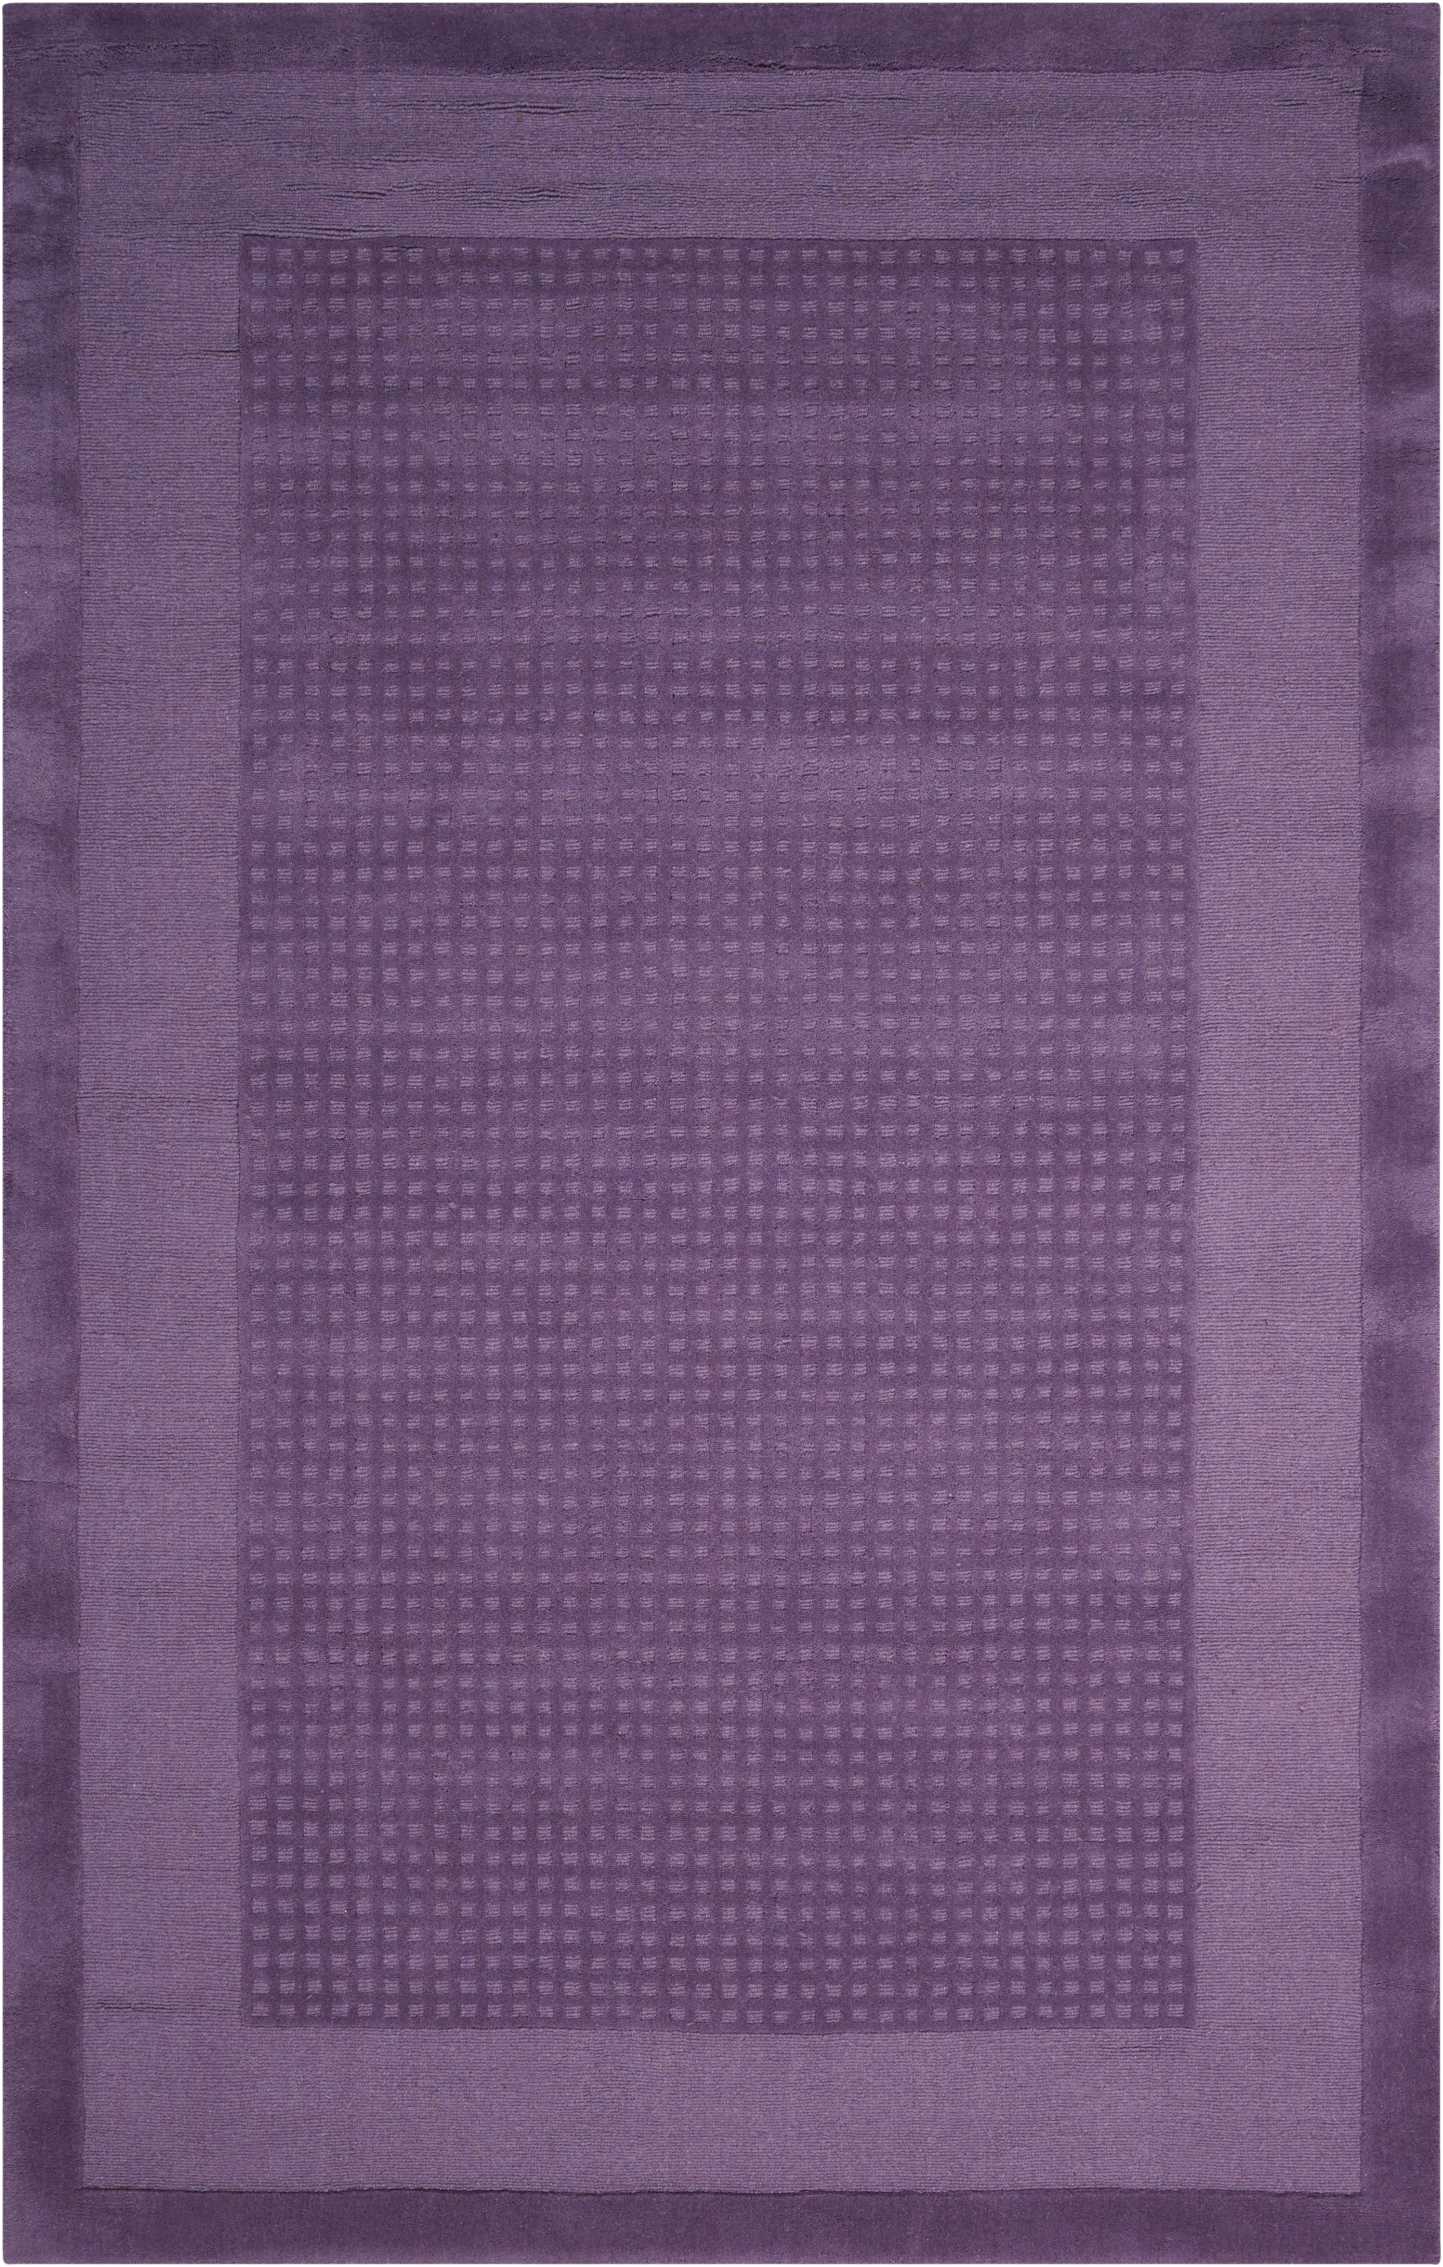 Nourison Westport Solid Purple 3'6" x 5'6" Area Rug, (4x6) - image 2 of 5